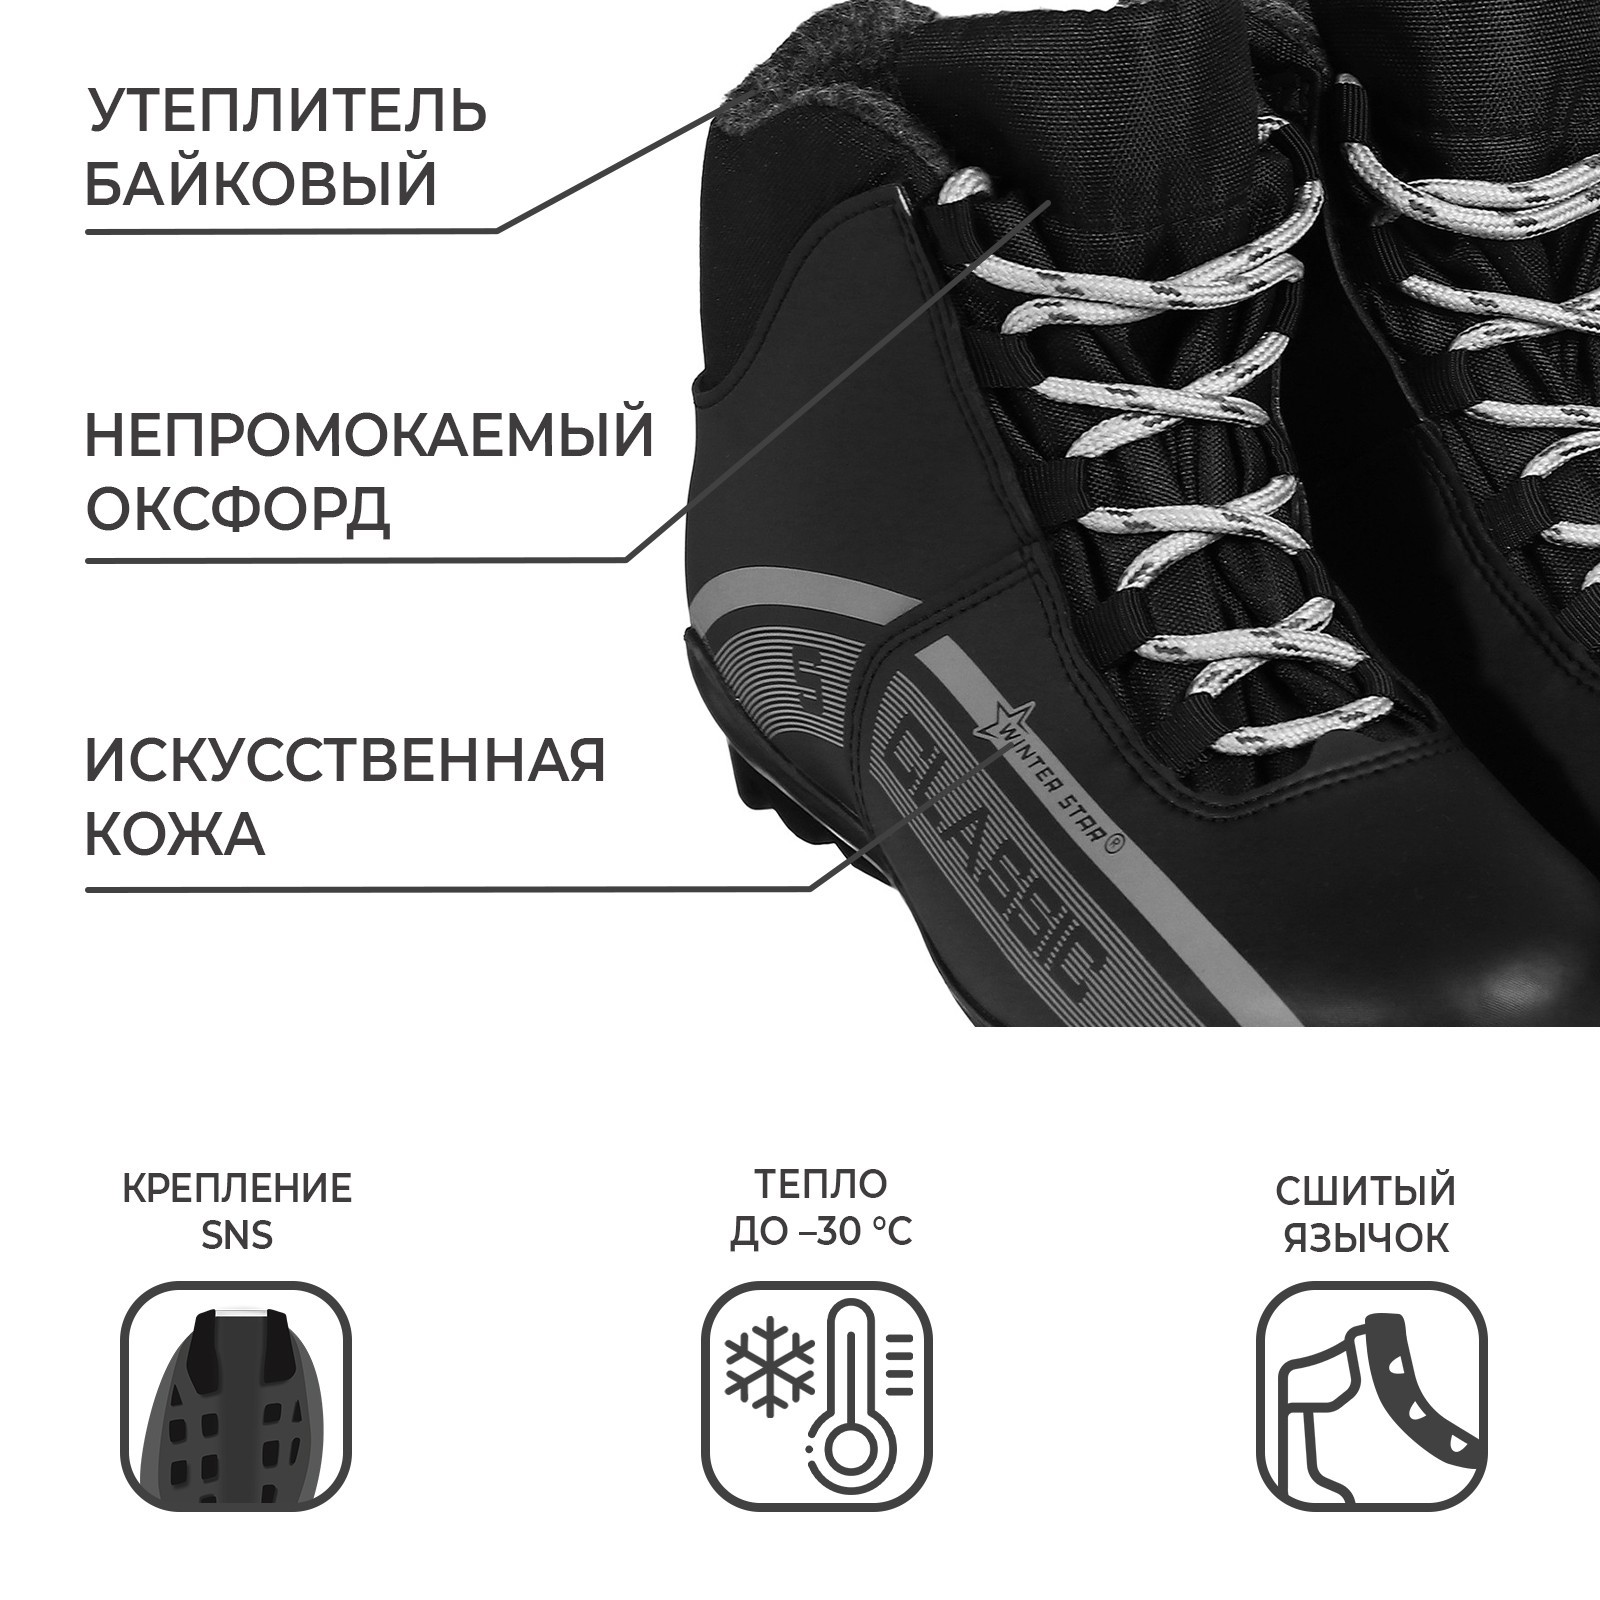 Ботинки лыжные Winter Star classic, SNS, цвет чёрный/серый